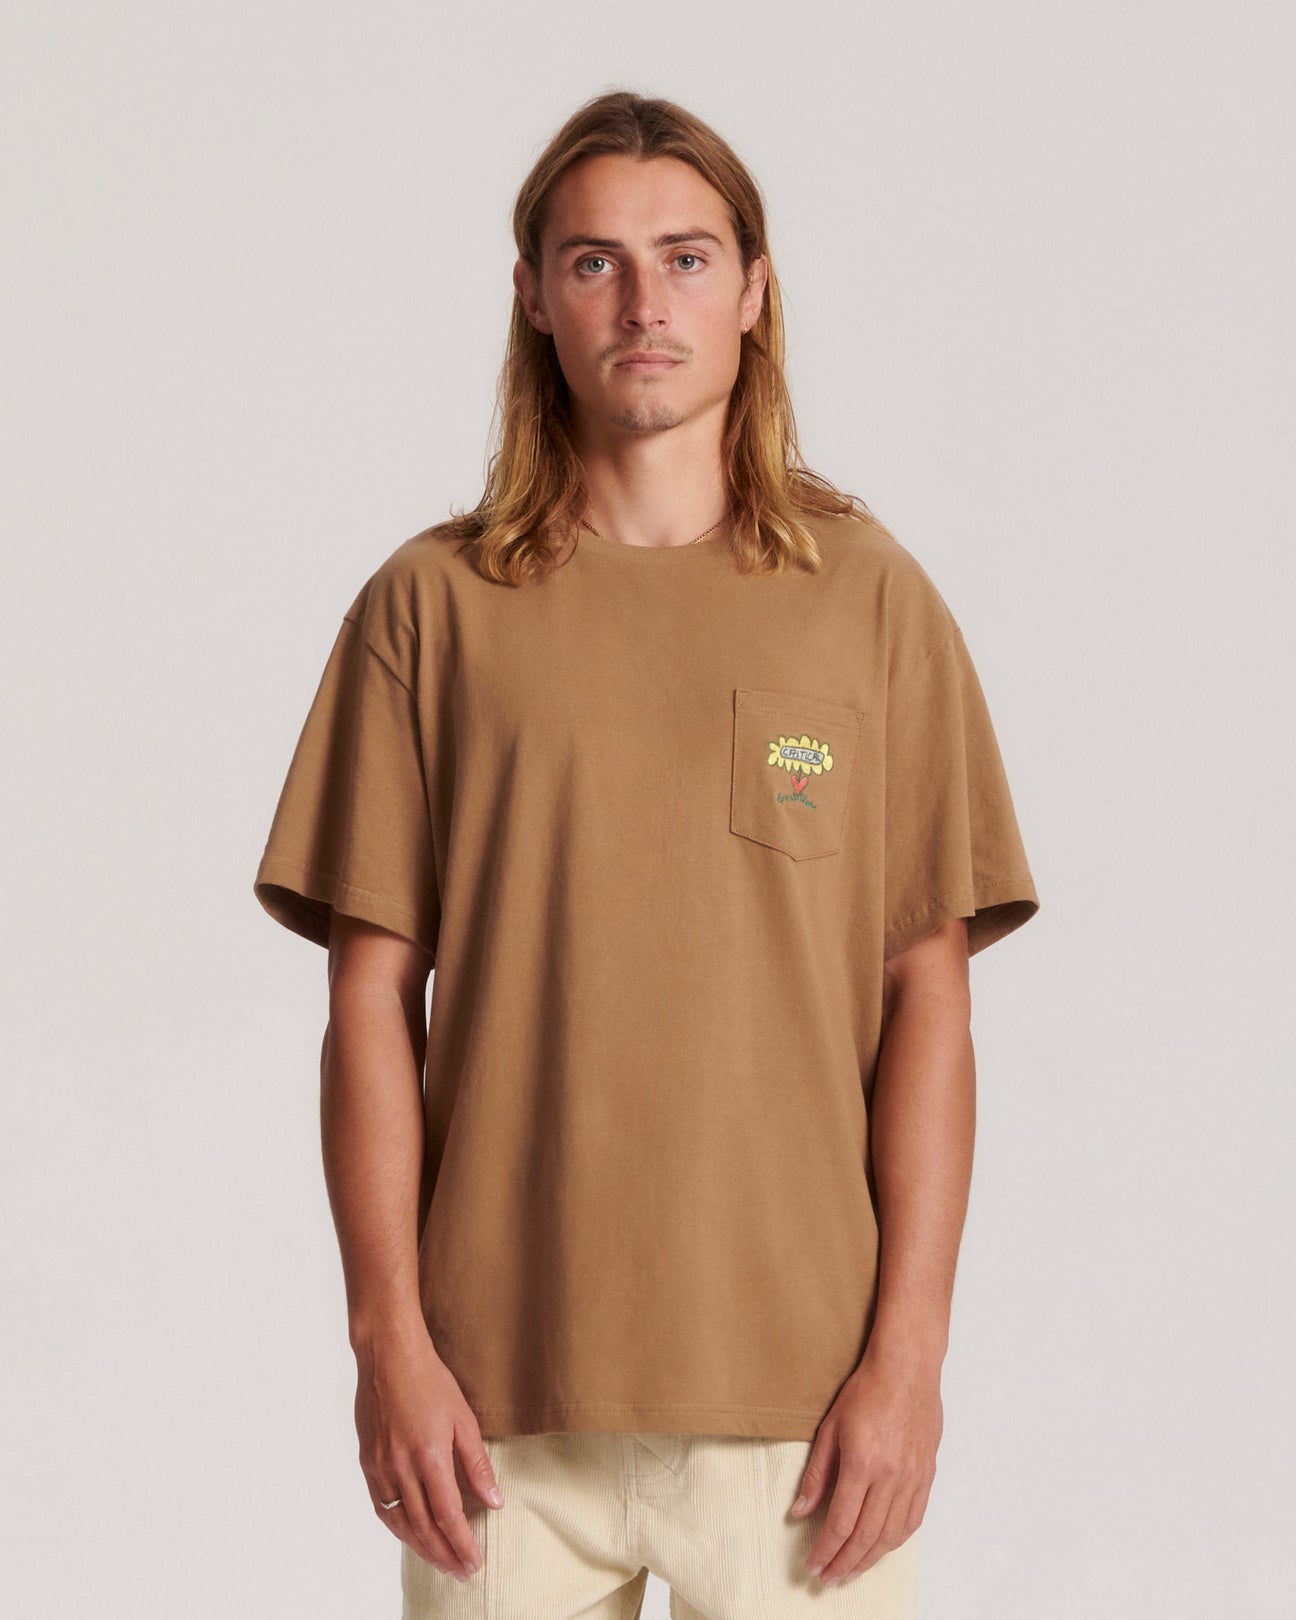 T-shirt marron logo poche avant design fleur imprimé au dos